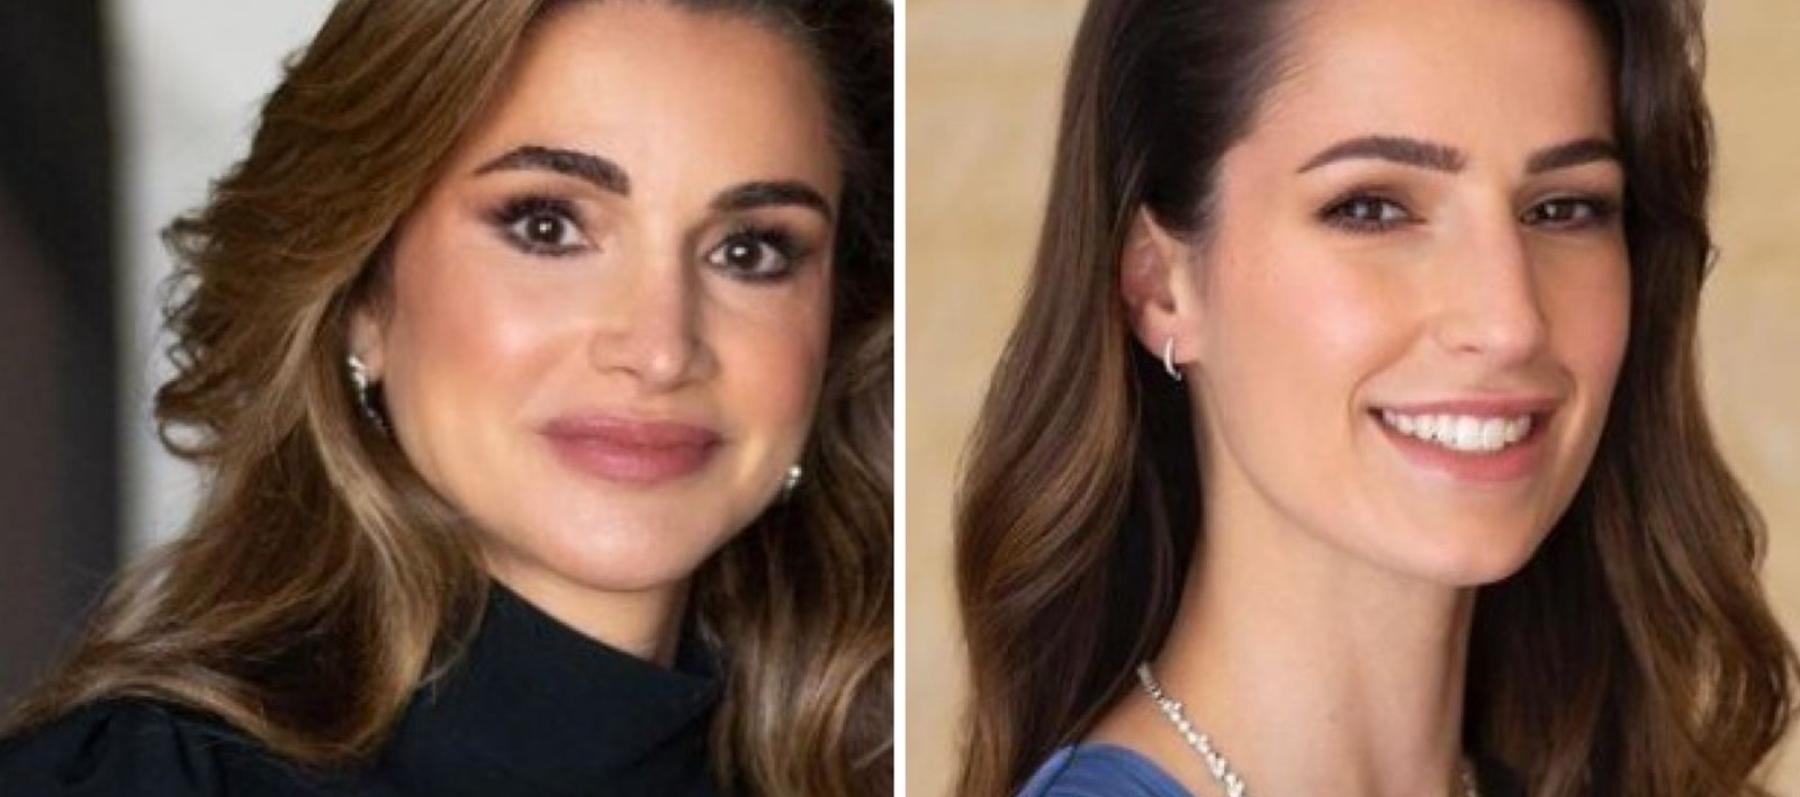 الملكة رانيا و الآنسة رجوة خطيبة ولي عهد الأردن - صورة معدلة من السوشيال ميديا